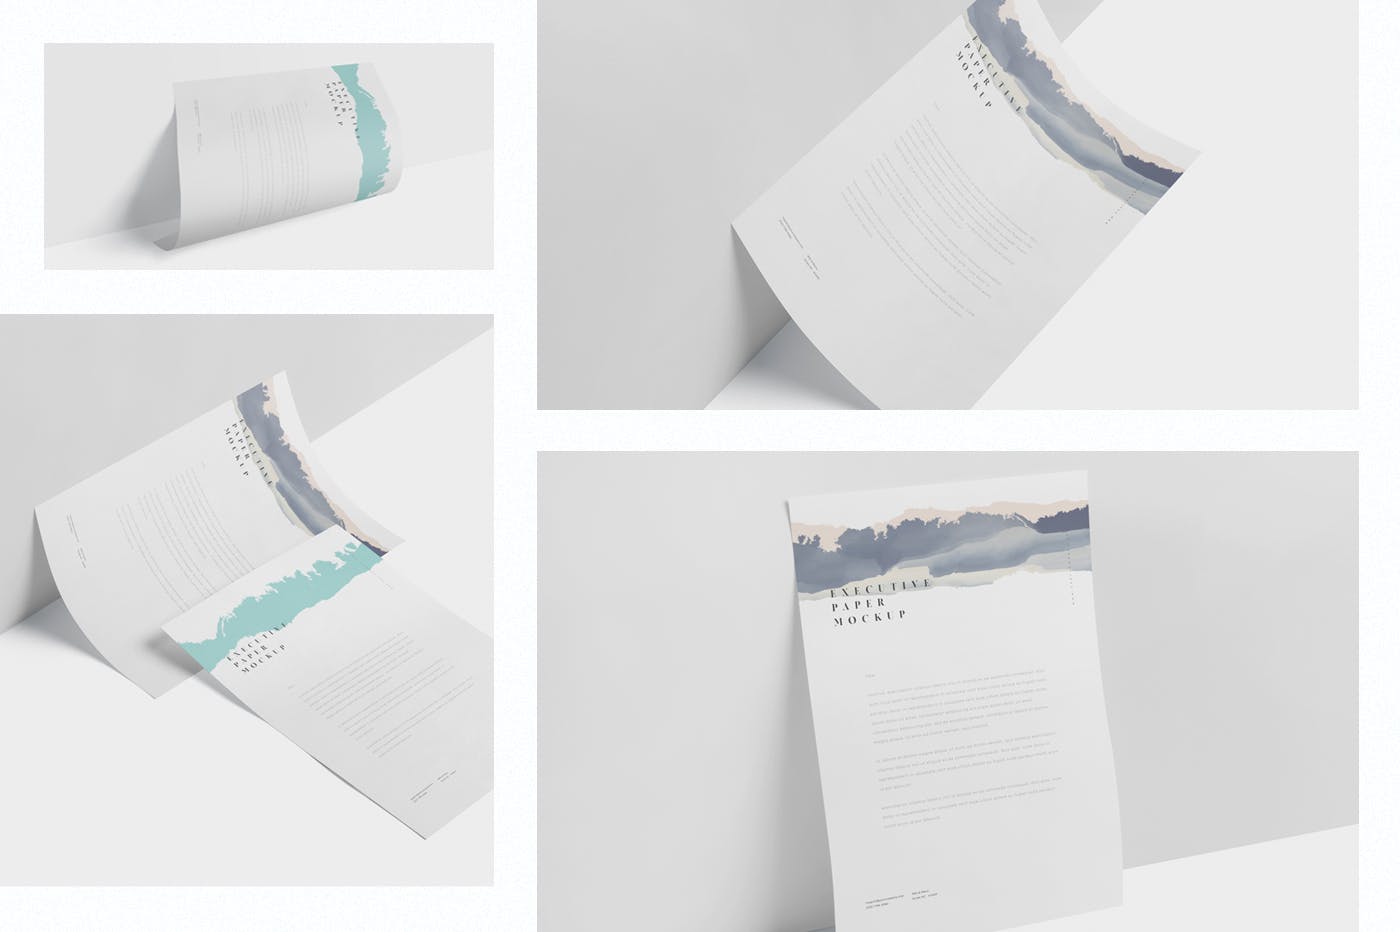 企业宣传单张设计效果图样机蚂蚁素材精选 Executive Paper Mockup – 7×10 Inch Size插图(1)